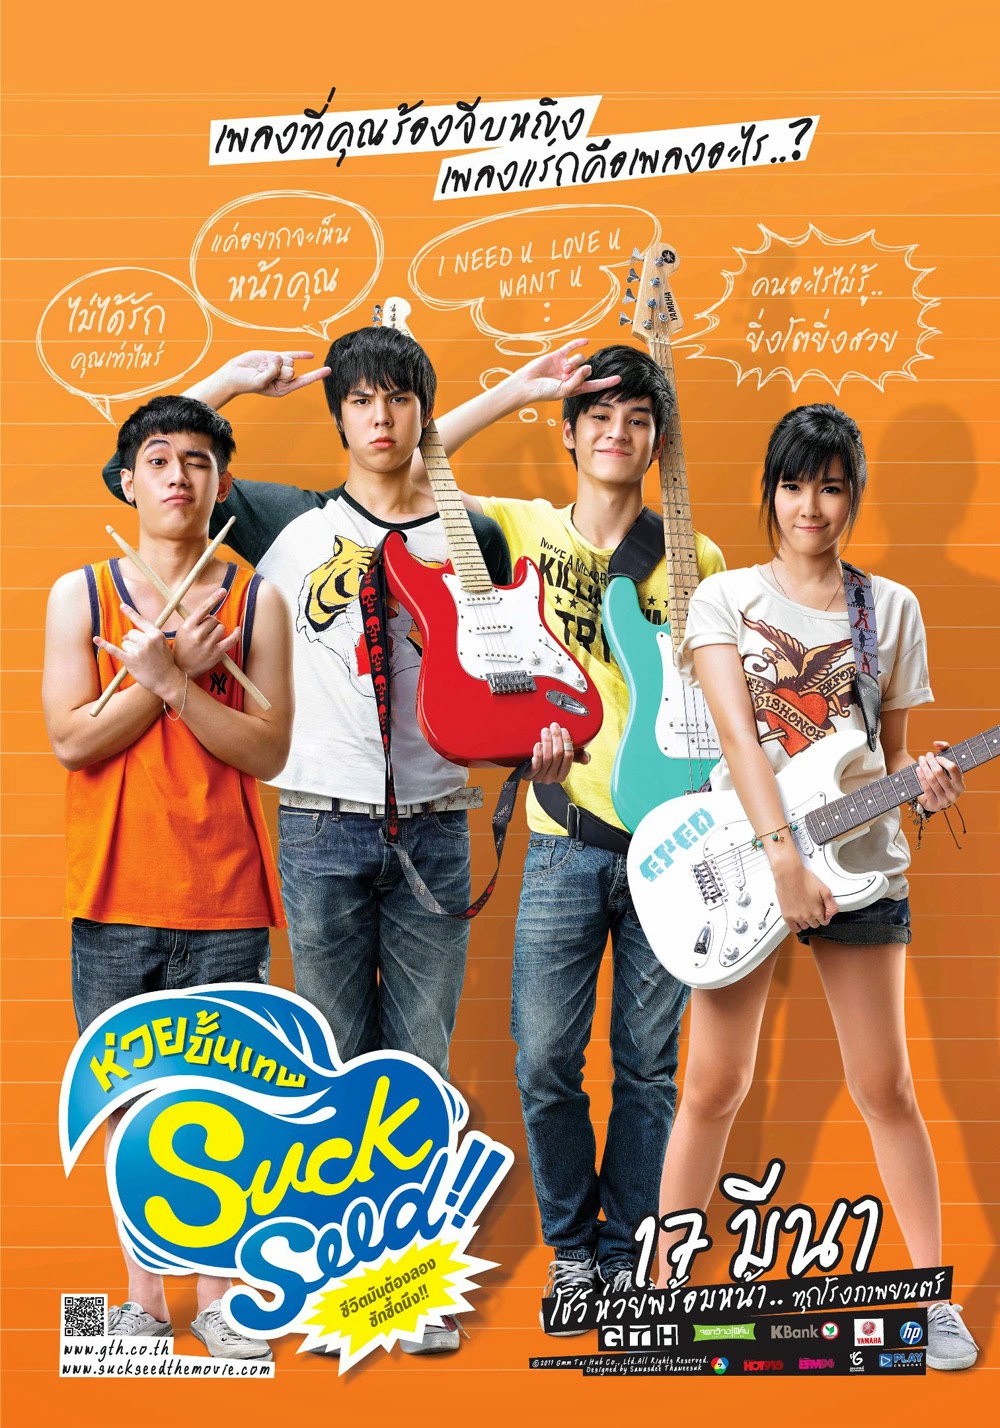 Phim hài Thái Lan hay nhất: Student Rock